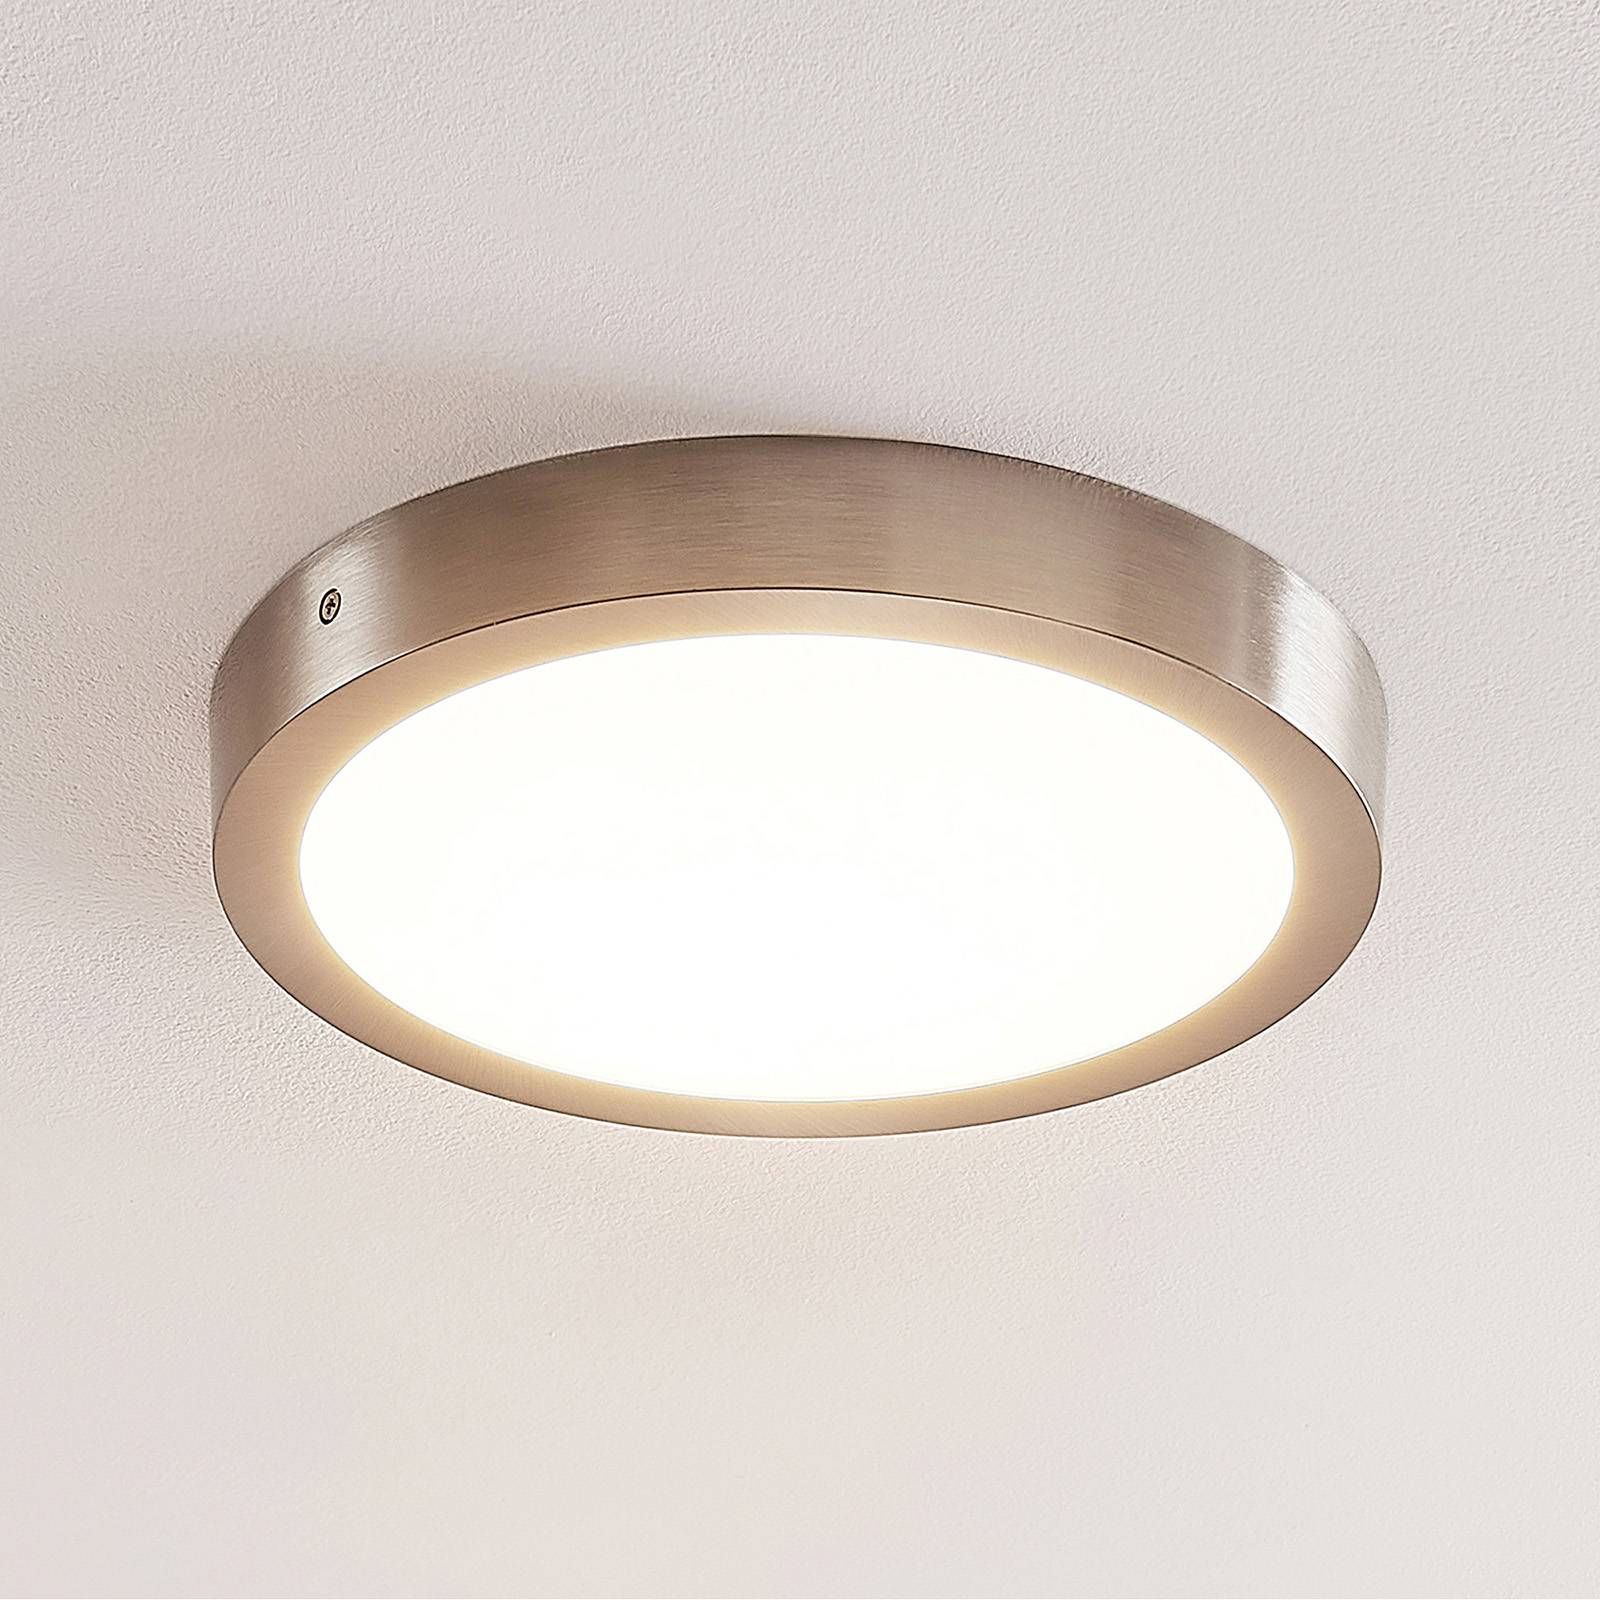 ELC Merina lampa sufitowa LED nikiel, 30 cm